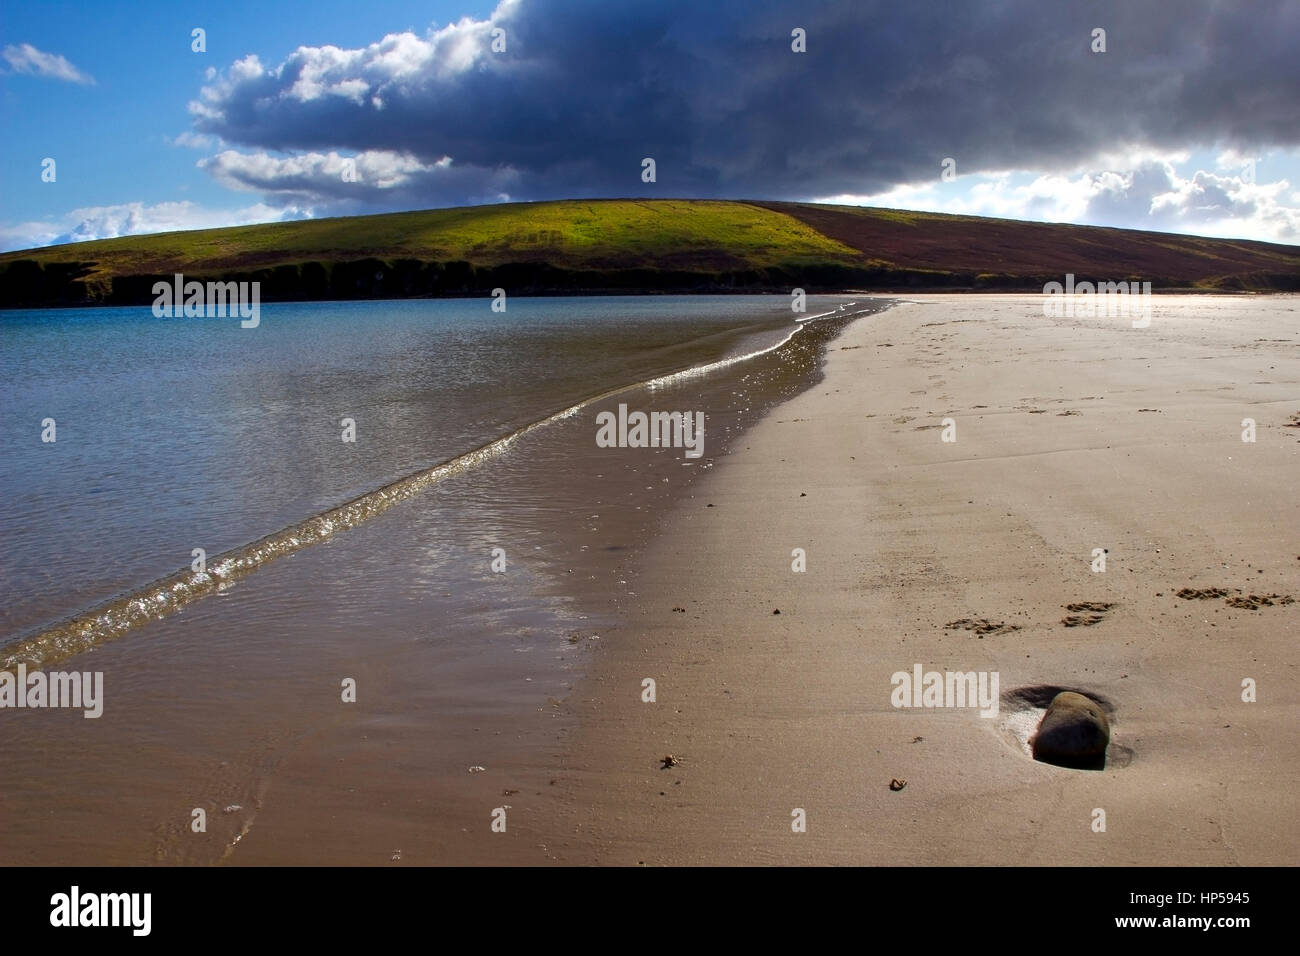 Una vista de la playa en la Bahía Waulkmill Orkney. Con una nube oscura y el cielo azul, iluminando una colina verde en la distancia. Con la luz apagada glinting th Foto de stock